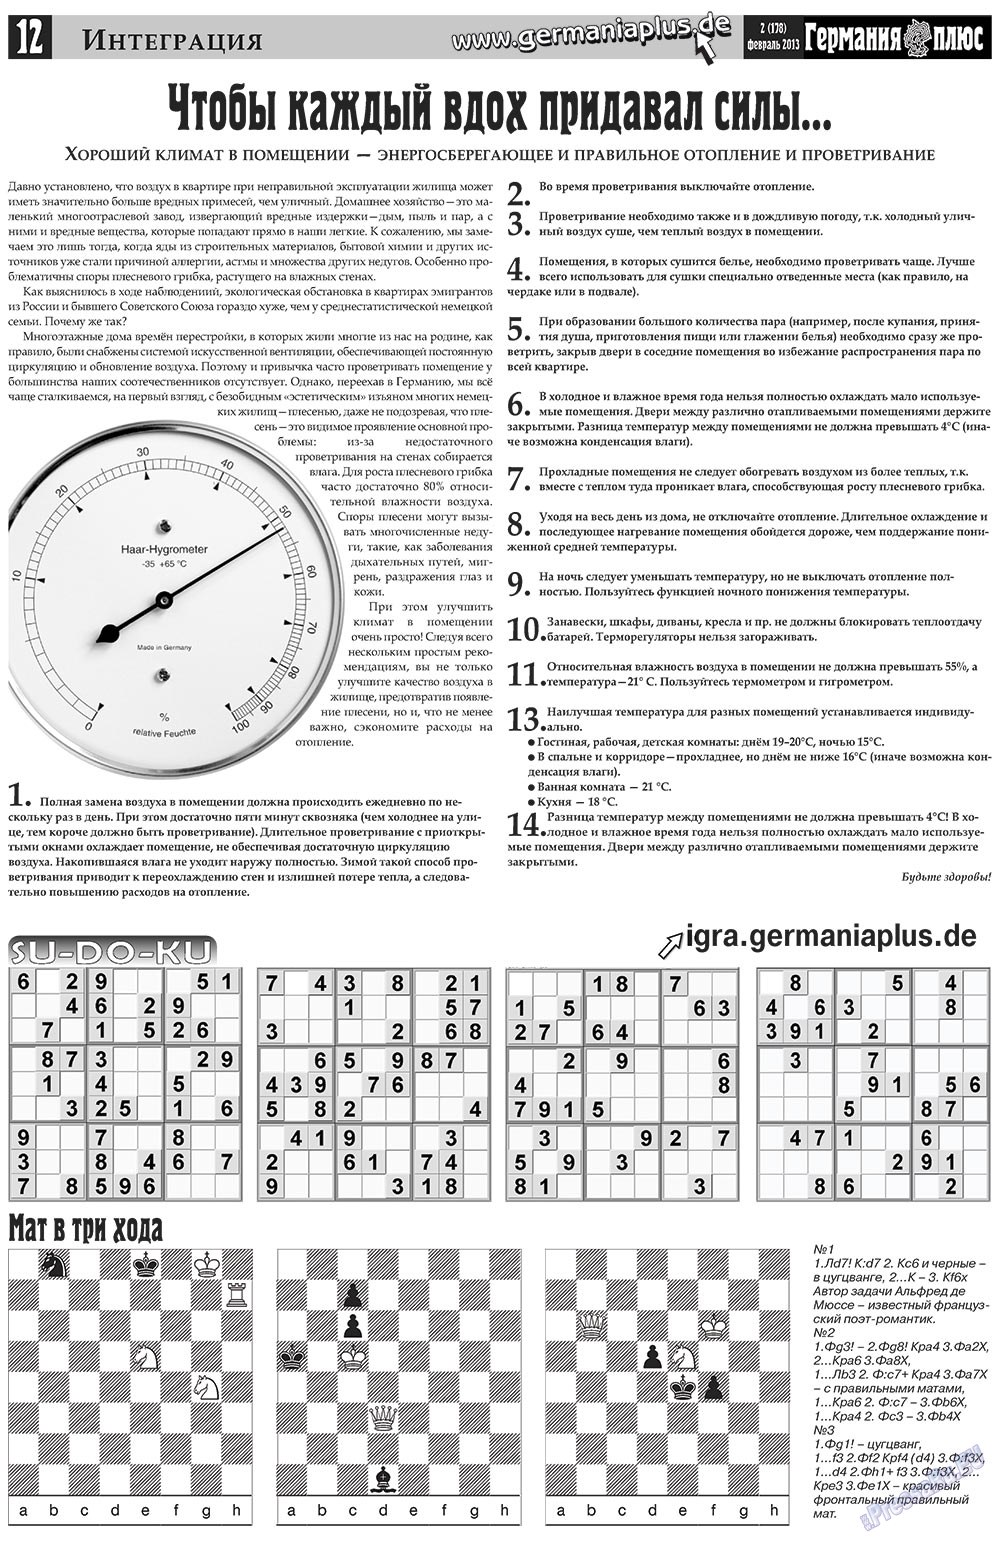 Германия плюс, газета. 2013 №2 стр.12